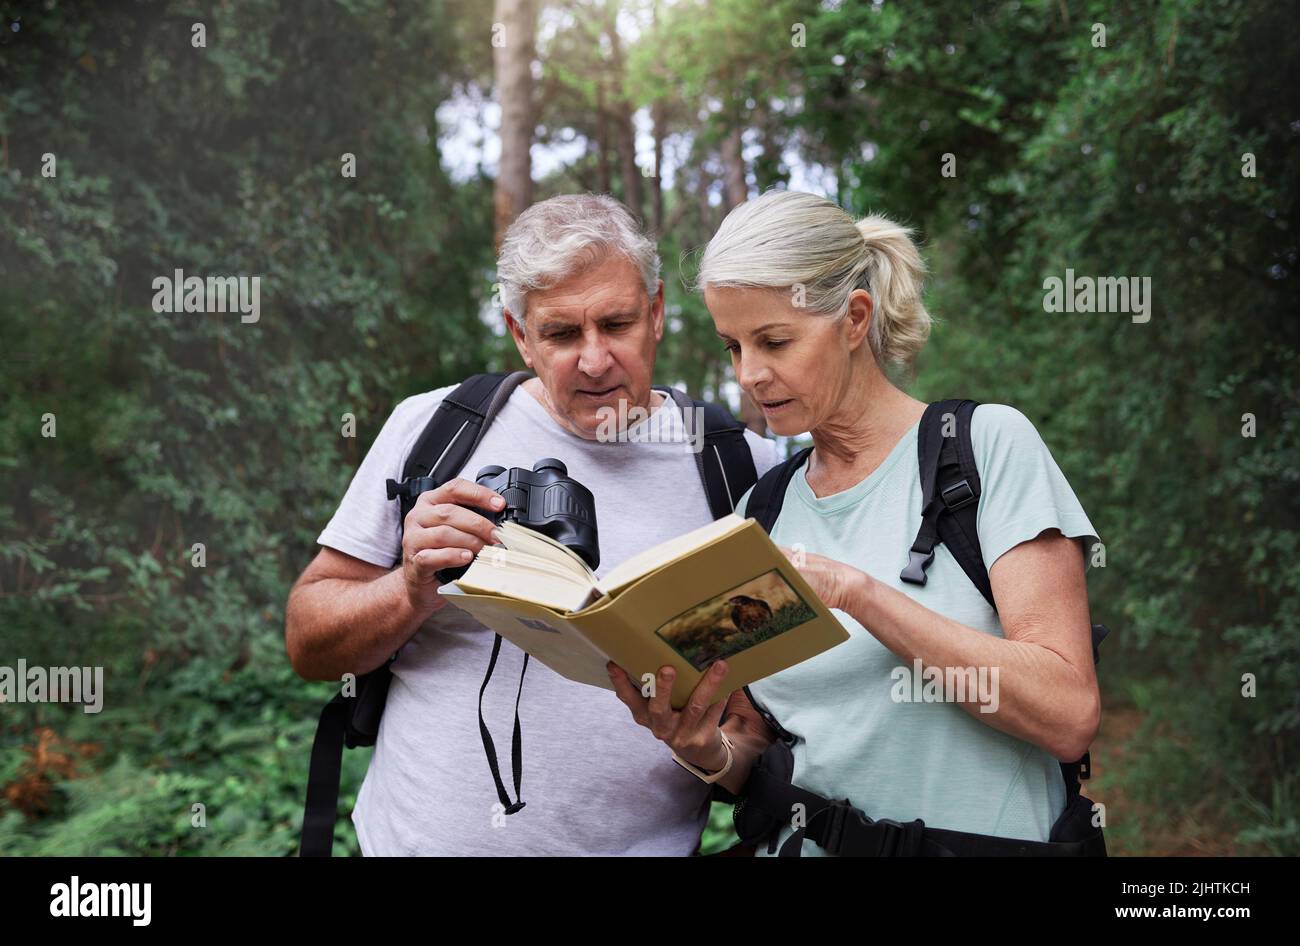 Ein älteres kaukasisches Paar benutzte Ferngläser und ein Buch, während es während einer Wanderung Vögel in einem Wald beobachtete. Reifer Ehemann und Ehefrau erkunden in einem Wald Stockfoto